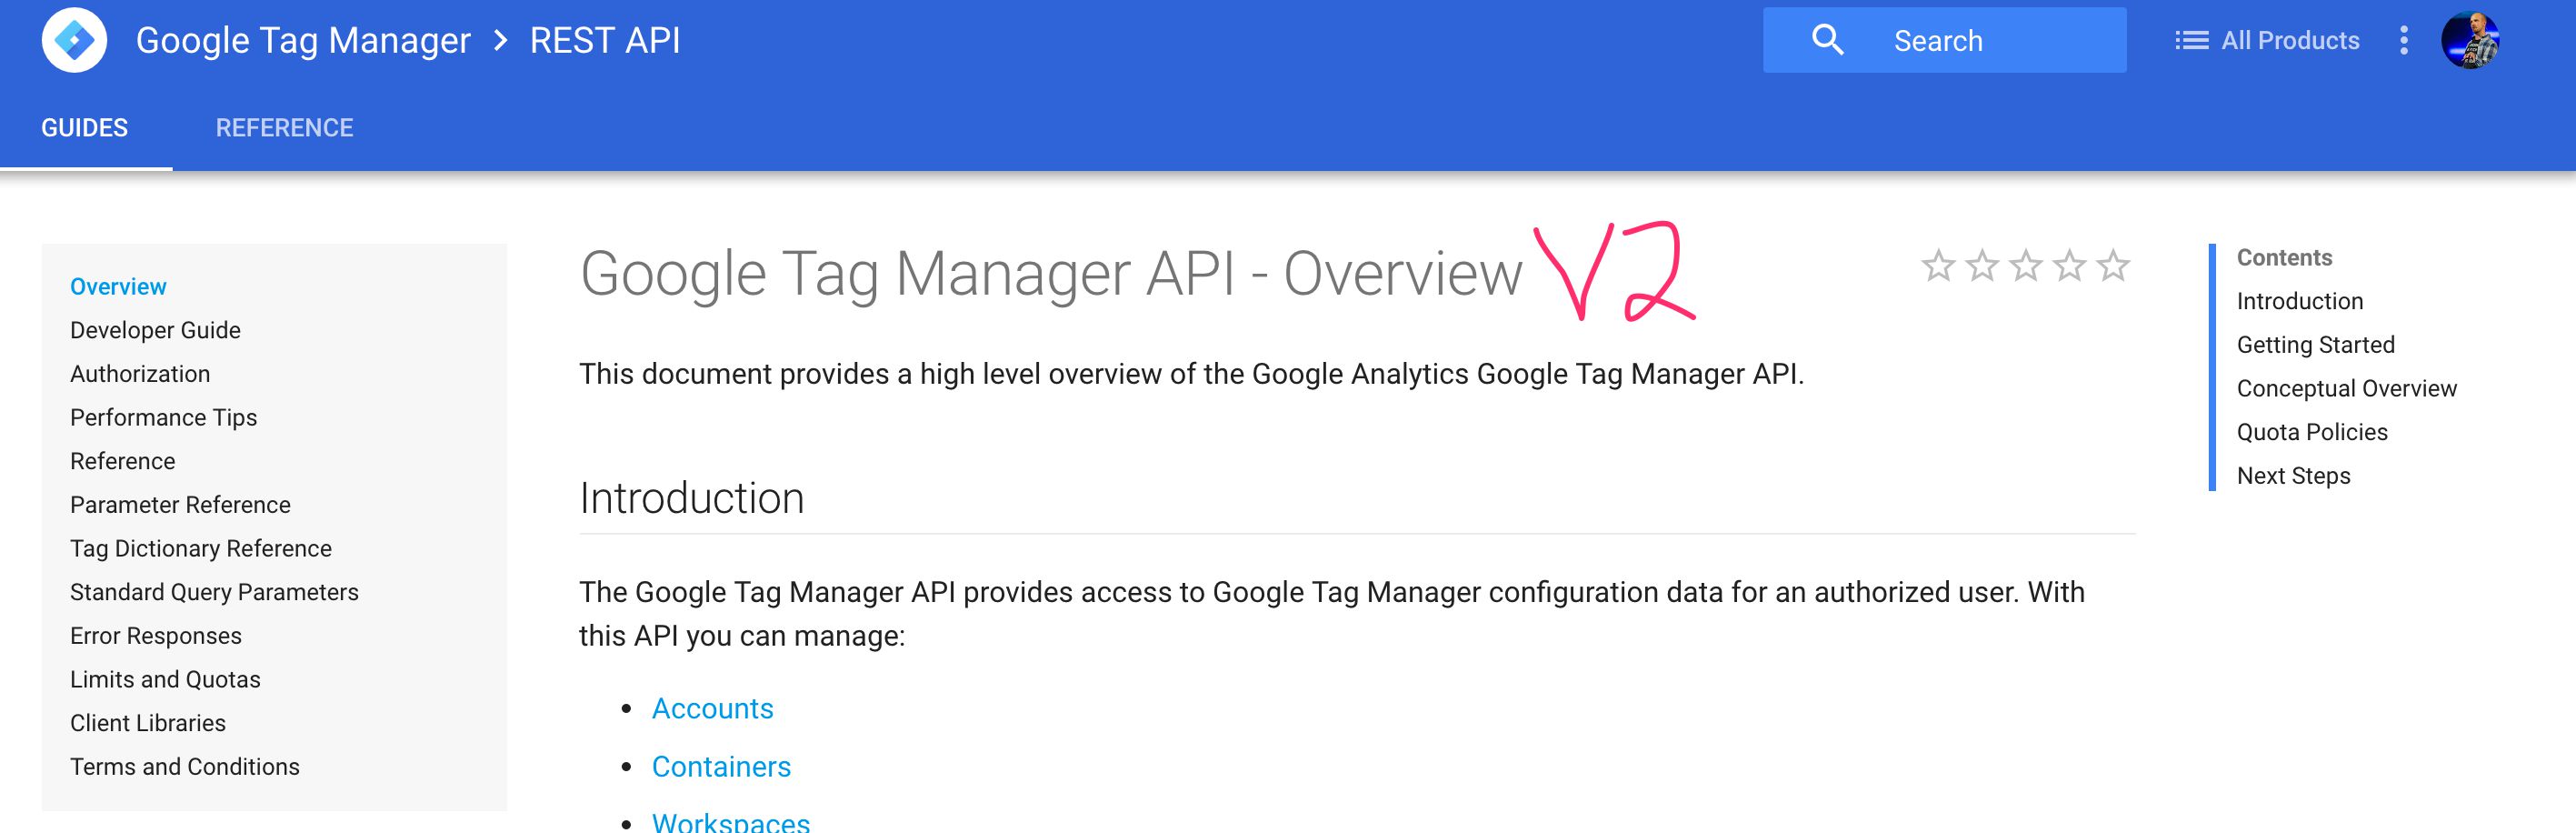 Google Tag Manager API V2